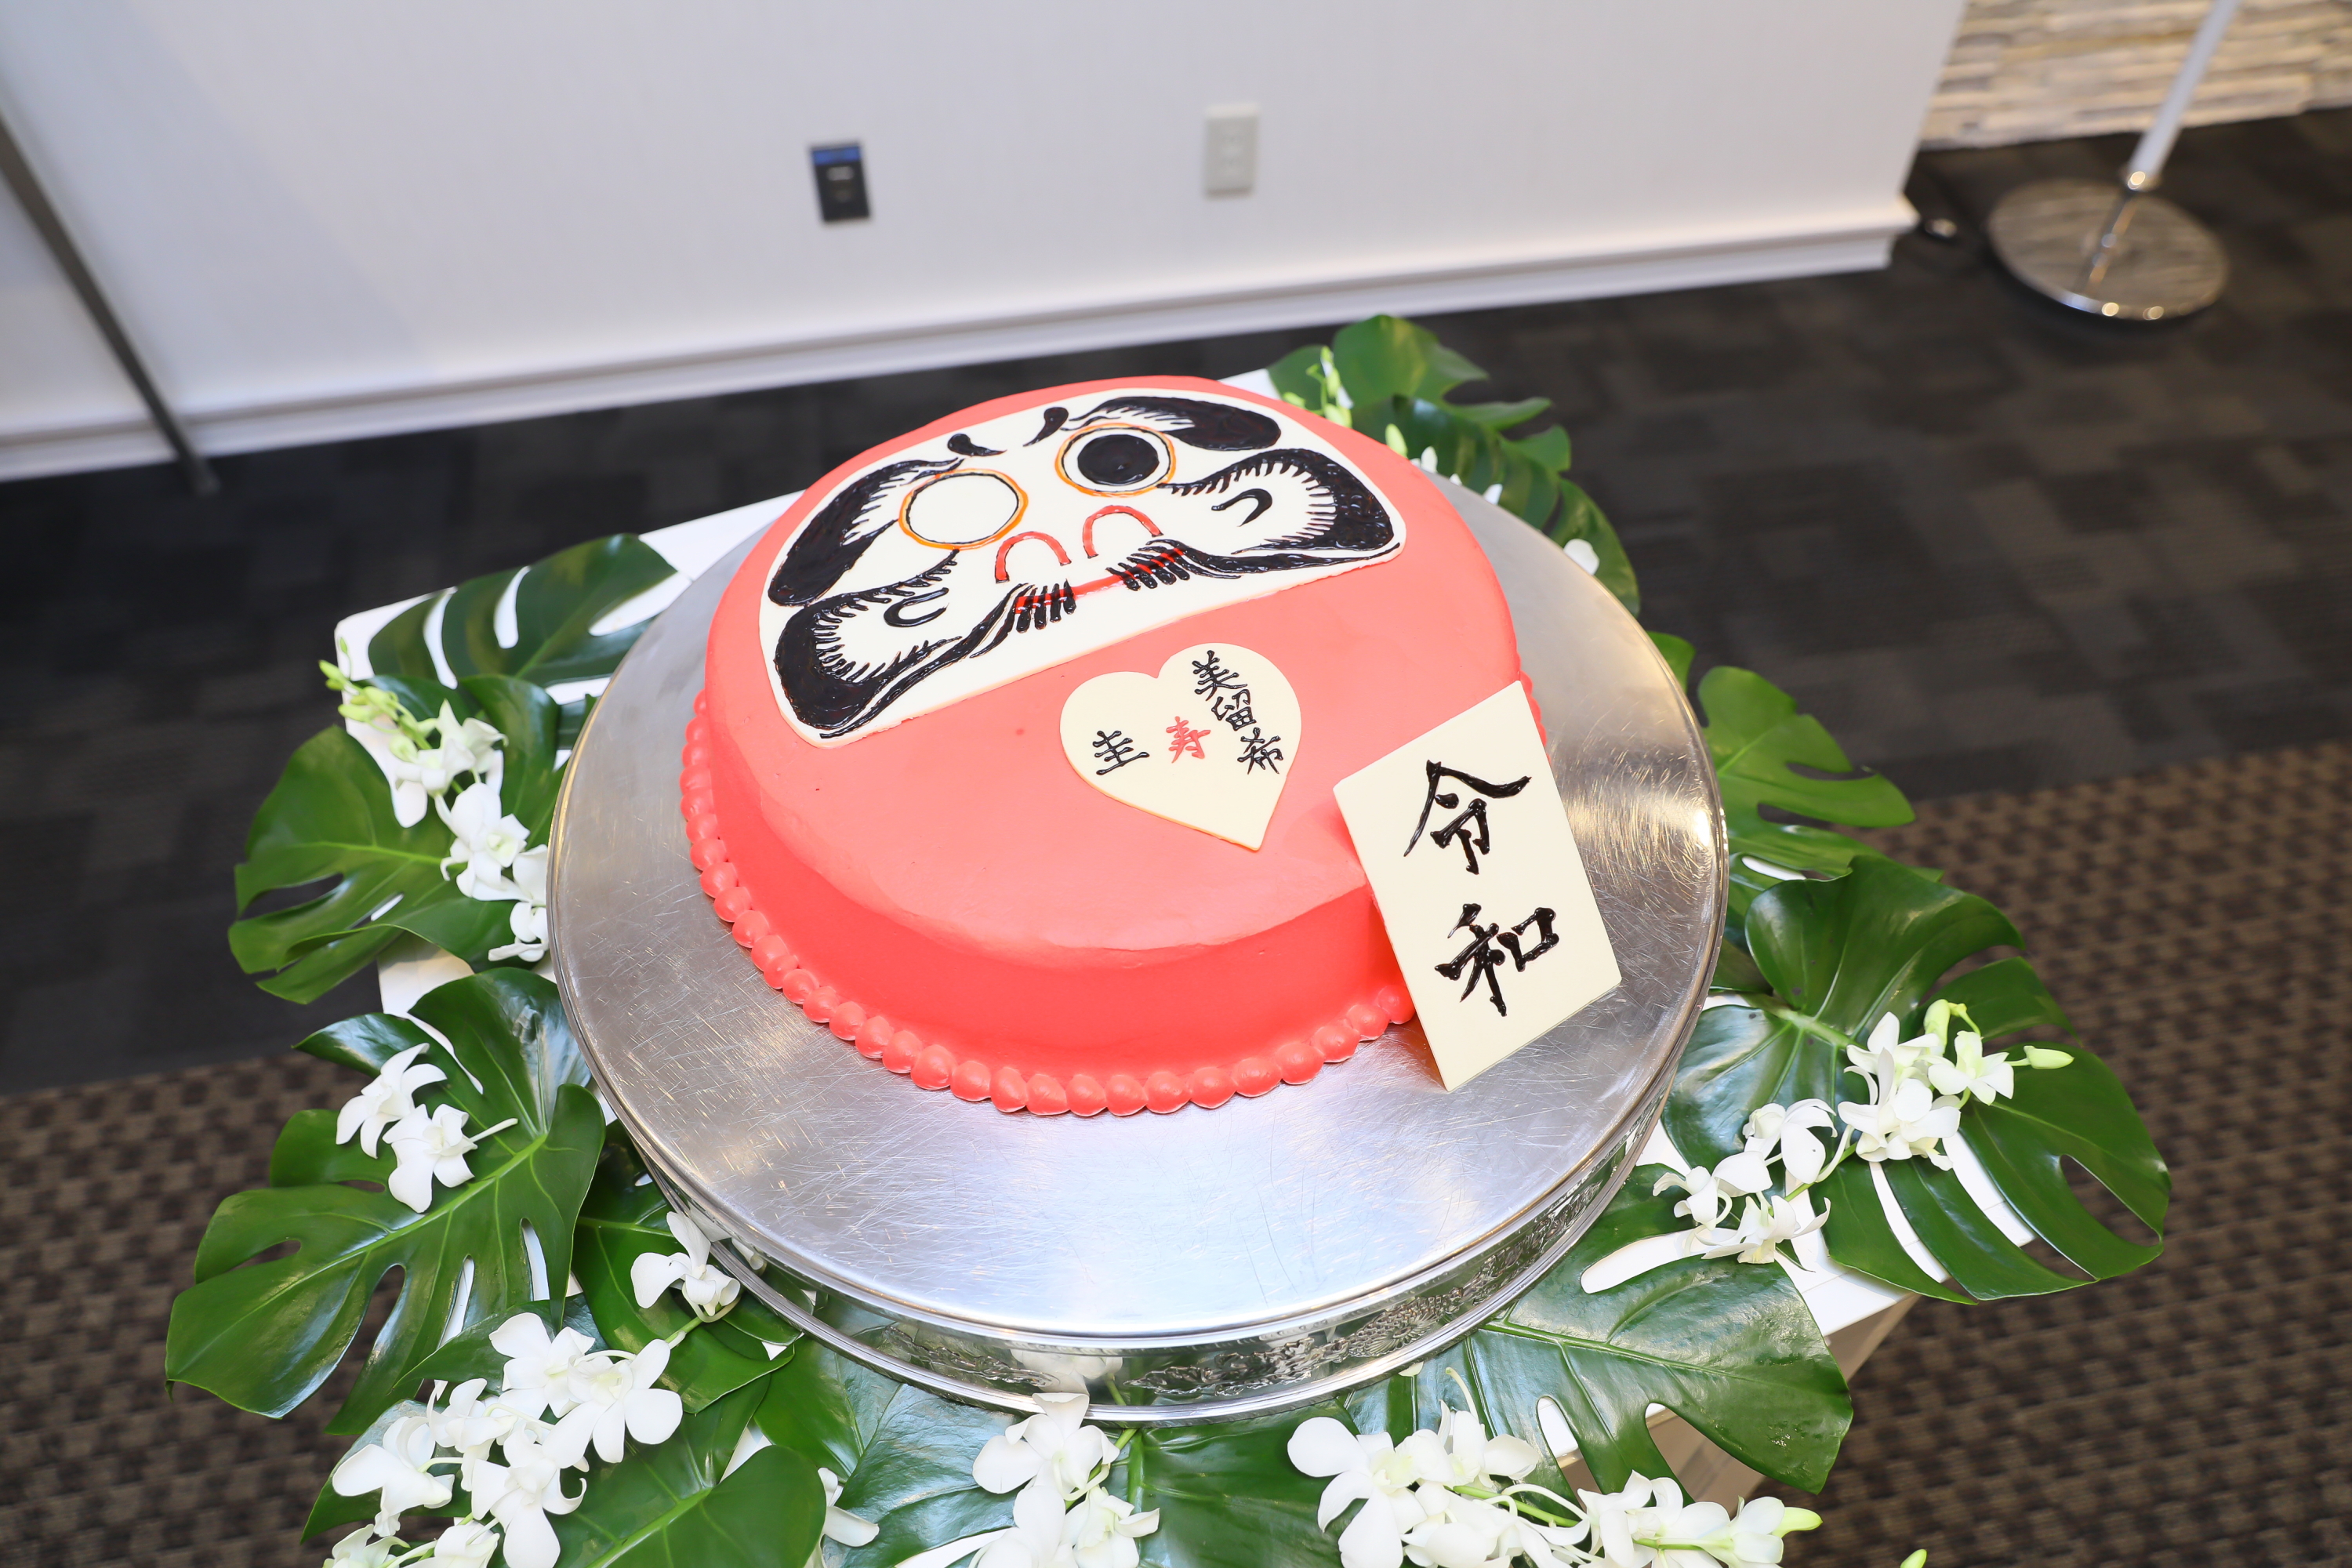 和装 でのちょっと変わったケーキ演出 マリエール太田 群馬県太田市の結婚式場 披露宴会場 挙式